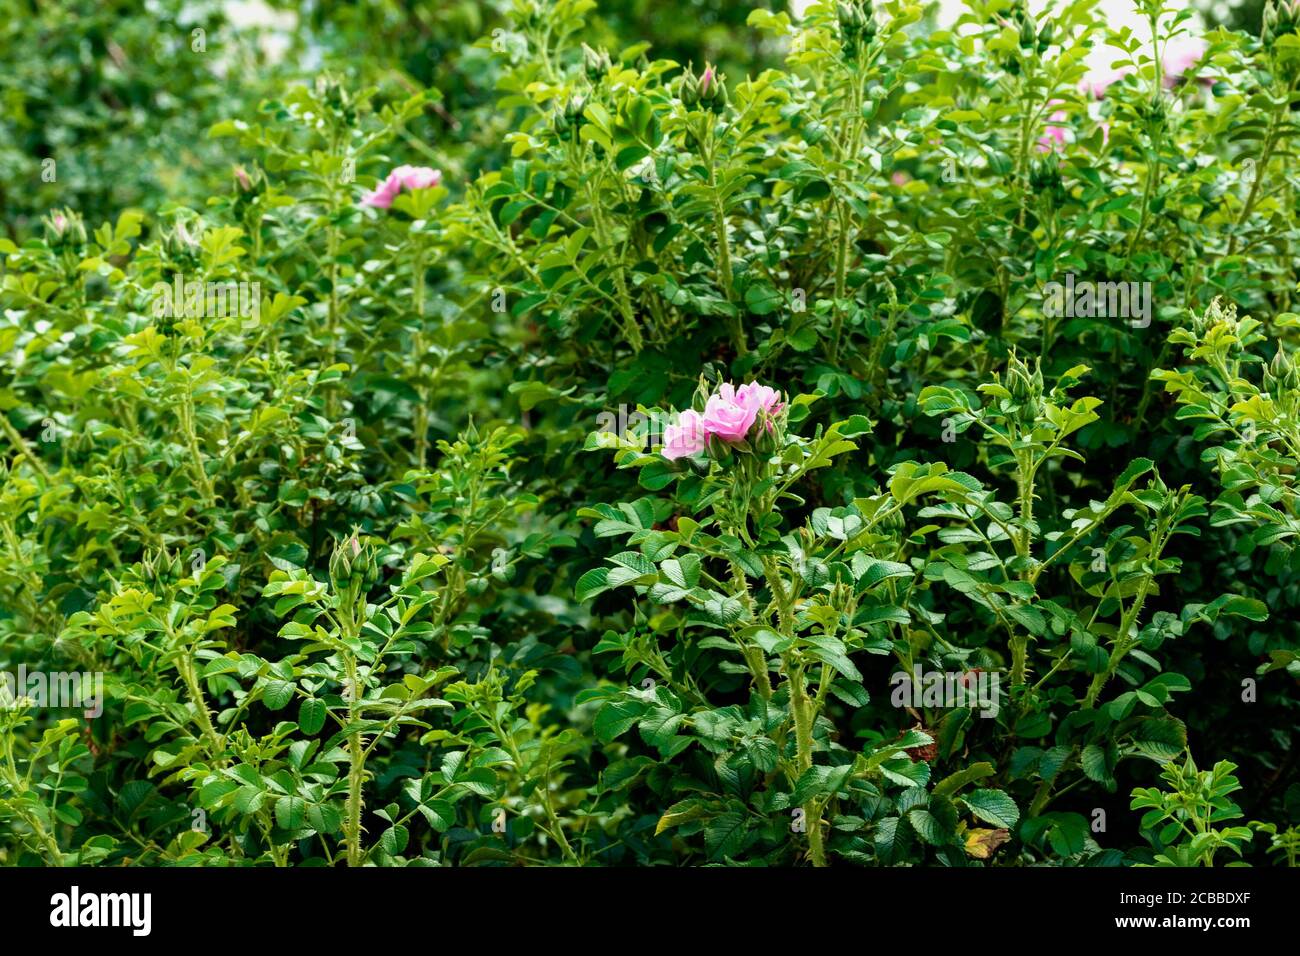 Schönheit in der Natur. Blume zwischen den grünen Blättern. Das Foto wurde im Botanischen Garten Tscheljabinsk aufgenommen. Stockfoto